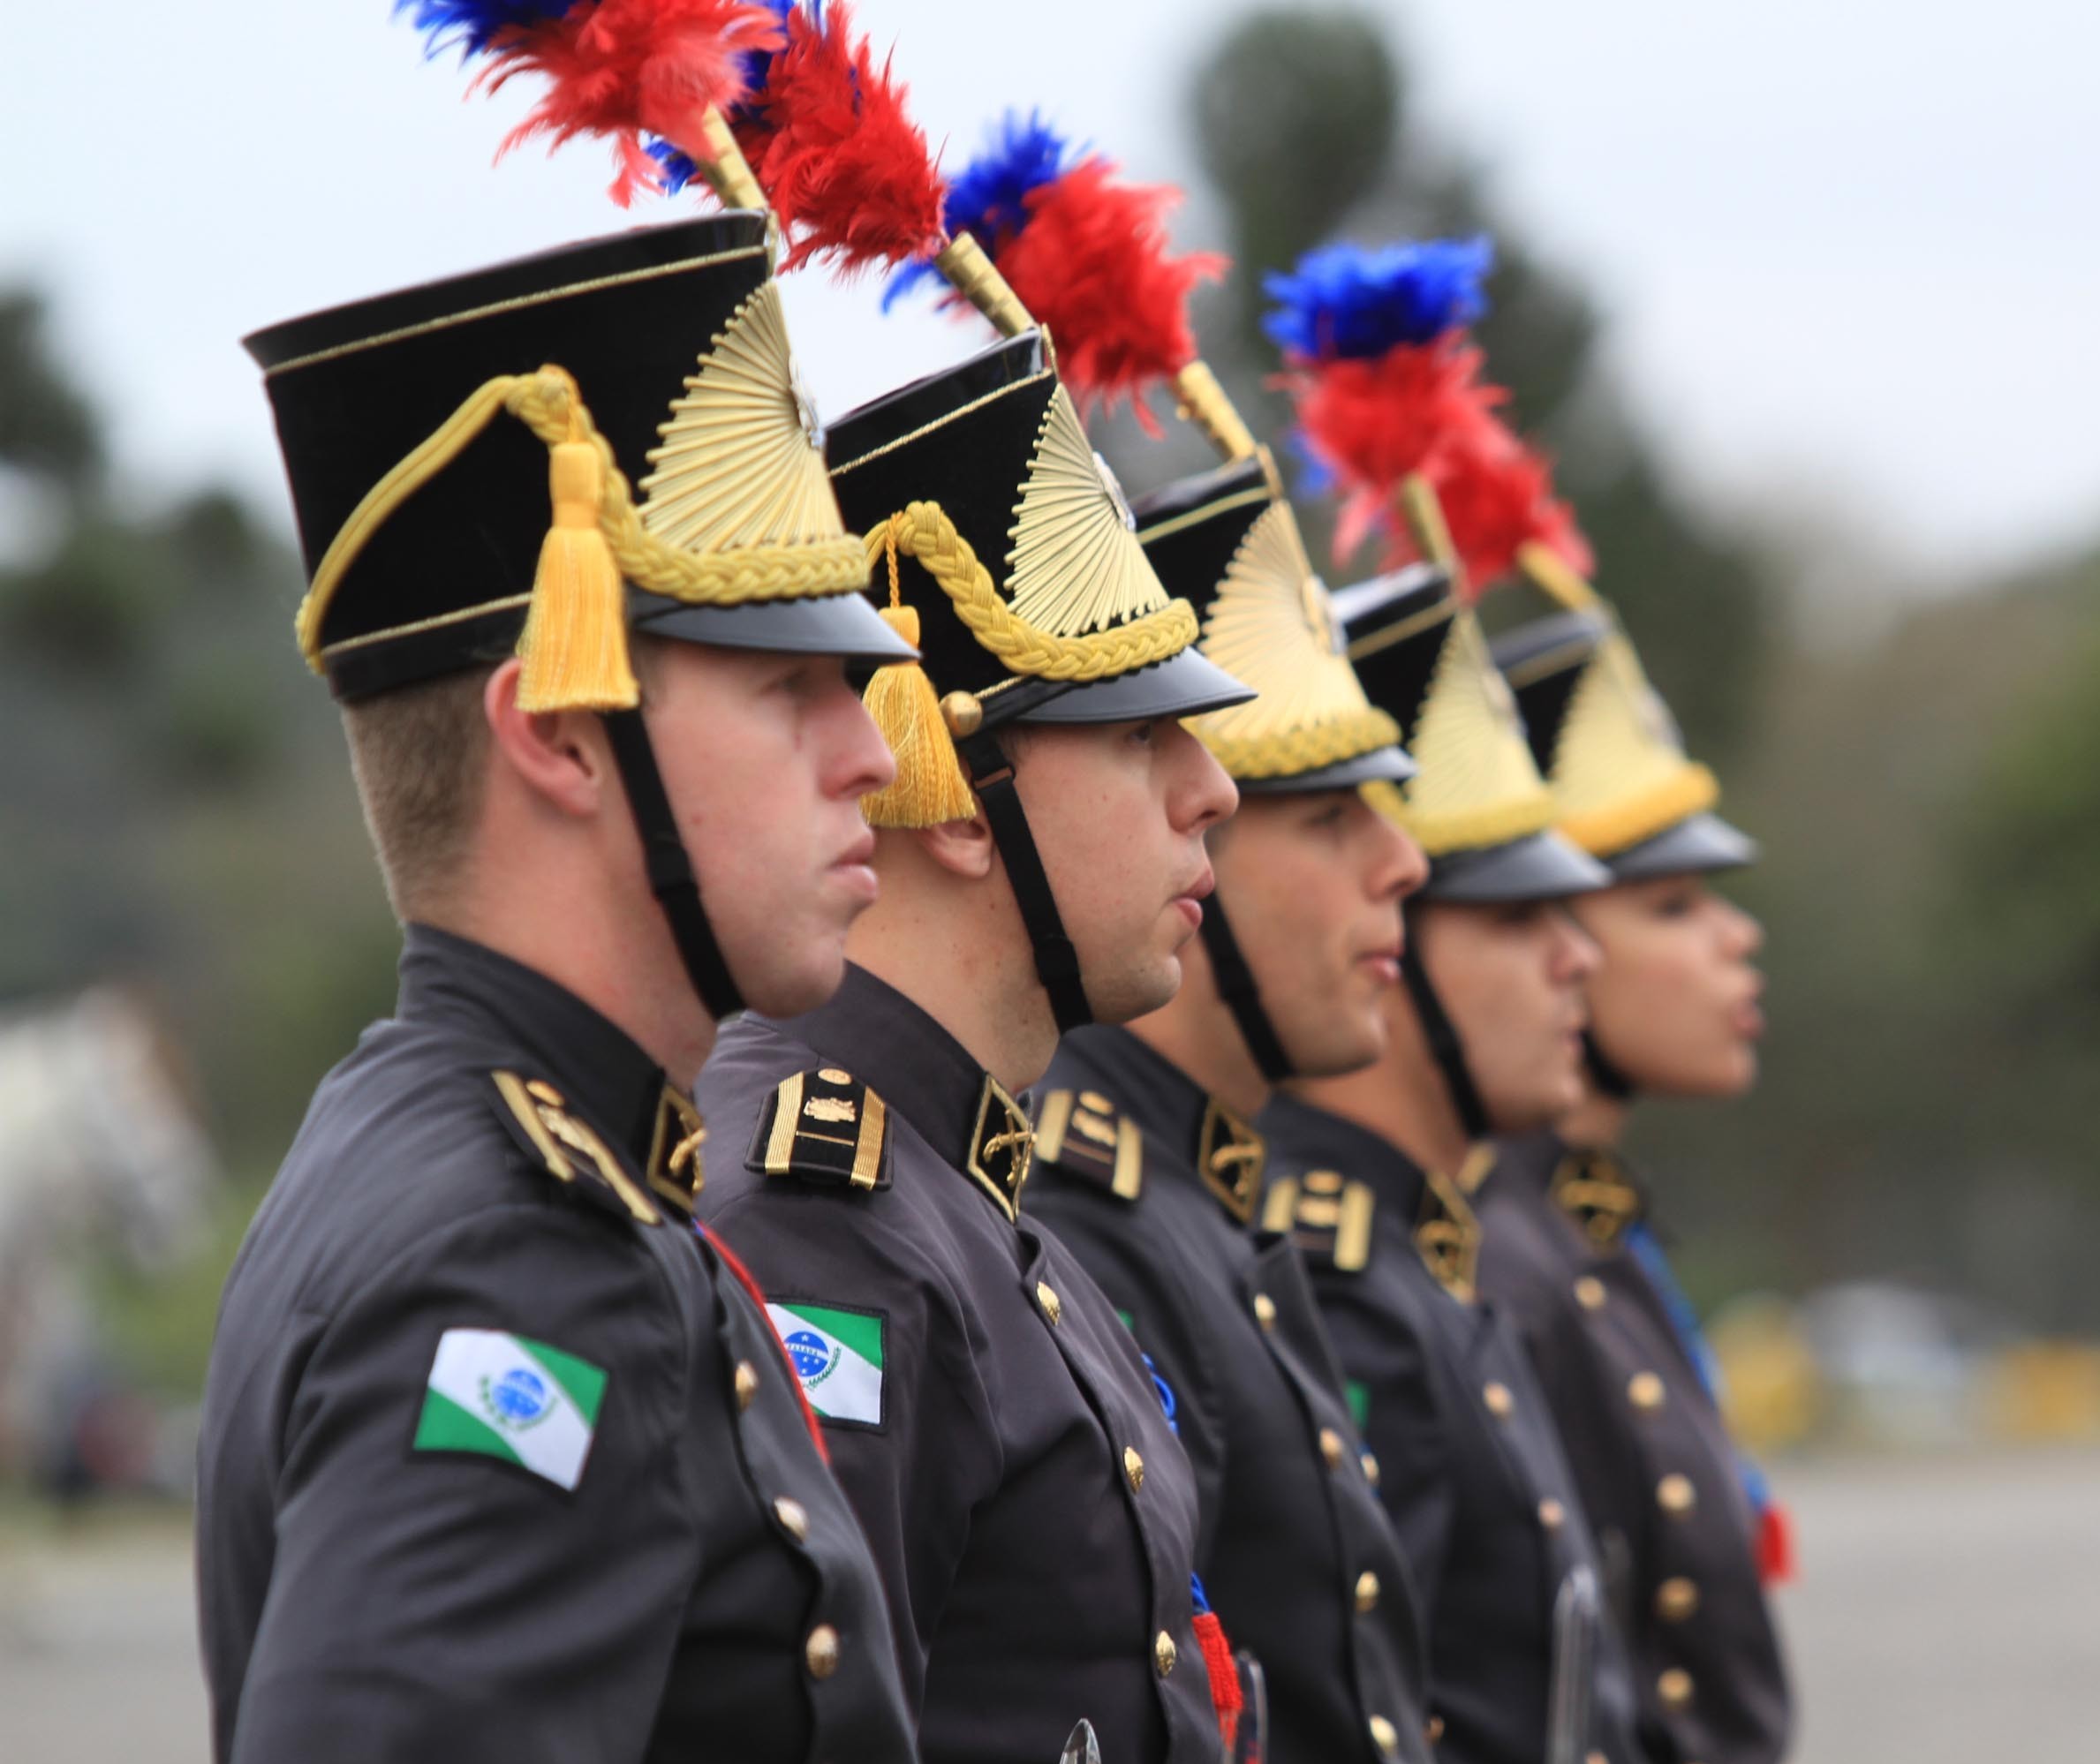  Abertas inscrições para seleção para o ingresso no curso de formação de oficiais da Polícia Militar do Paraná